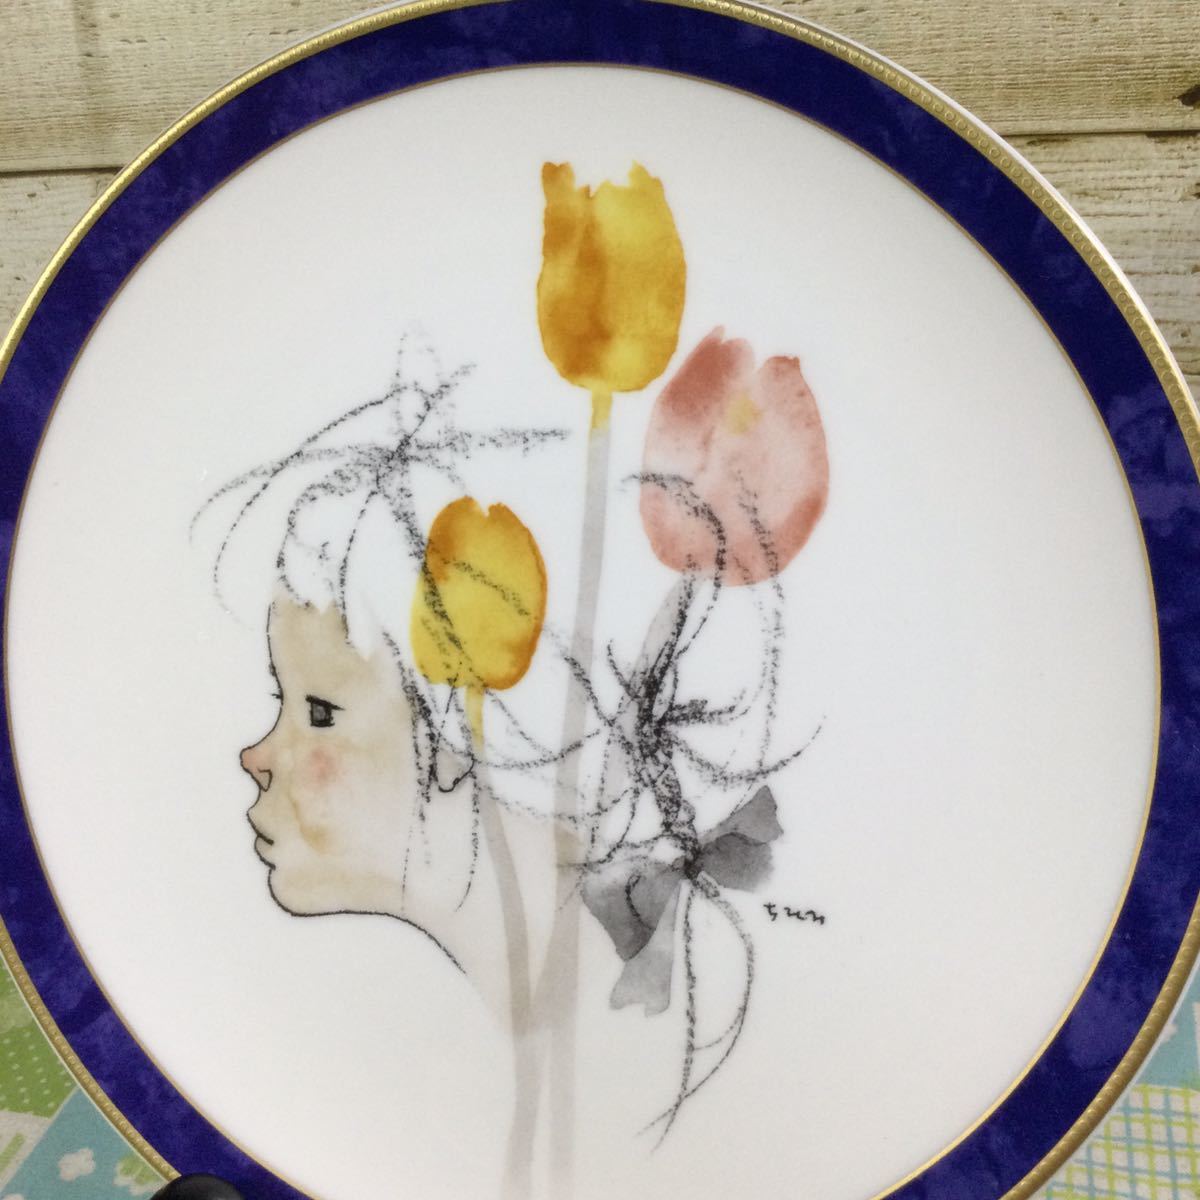 NARUMI ナルミ いわさきちひろ チューリップのある少女像 2000年 イヤーズプレート 絵皿 飾り皿の画像2